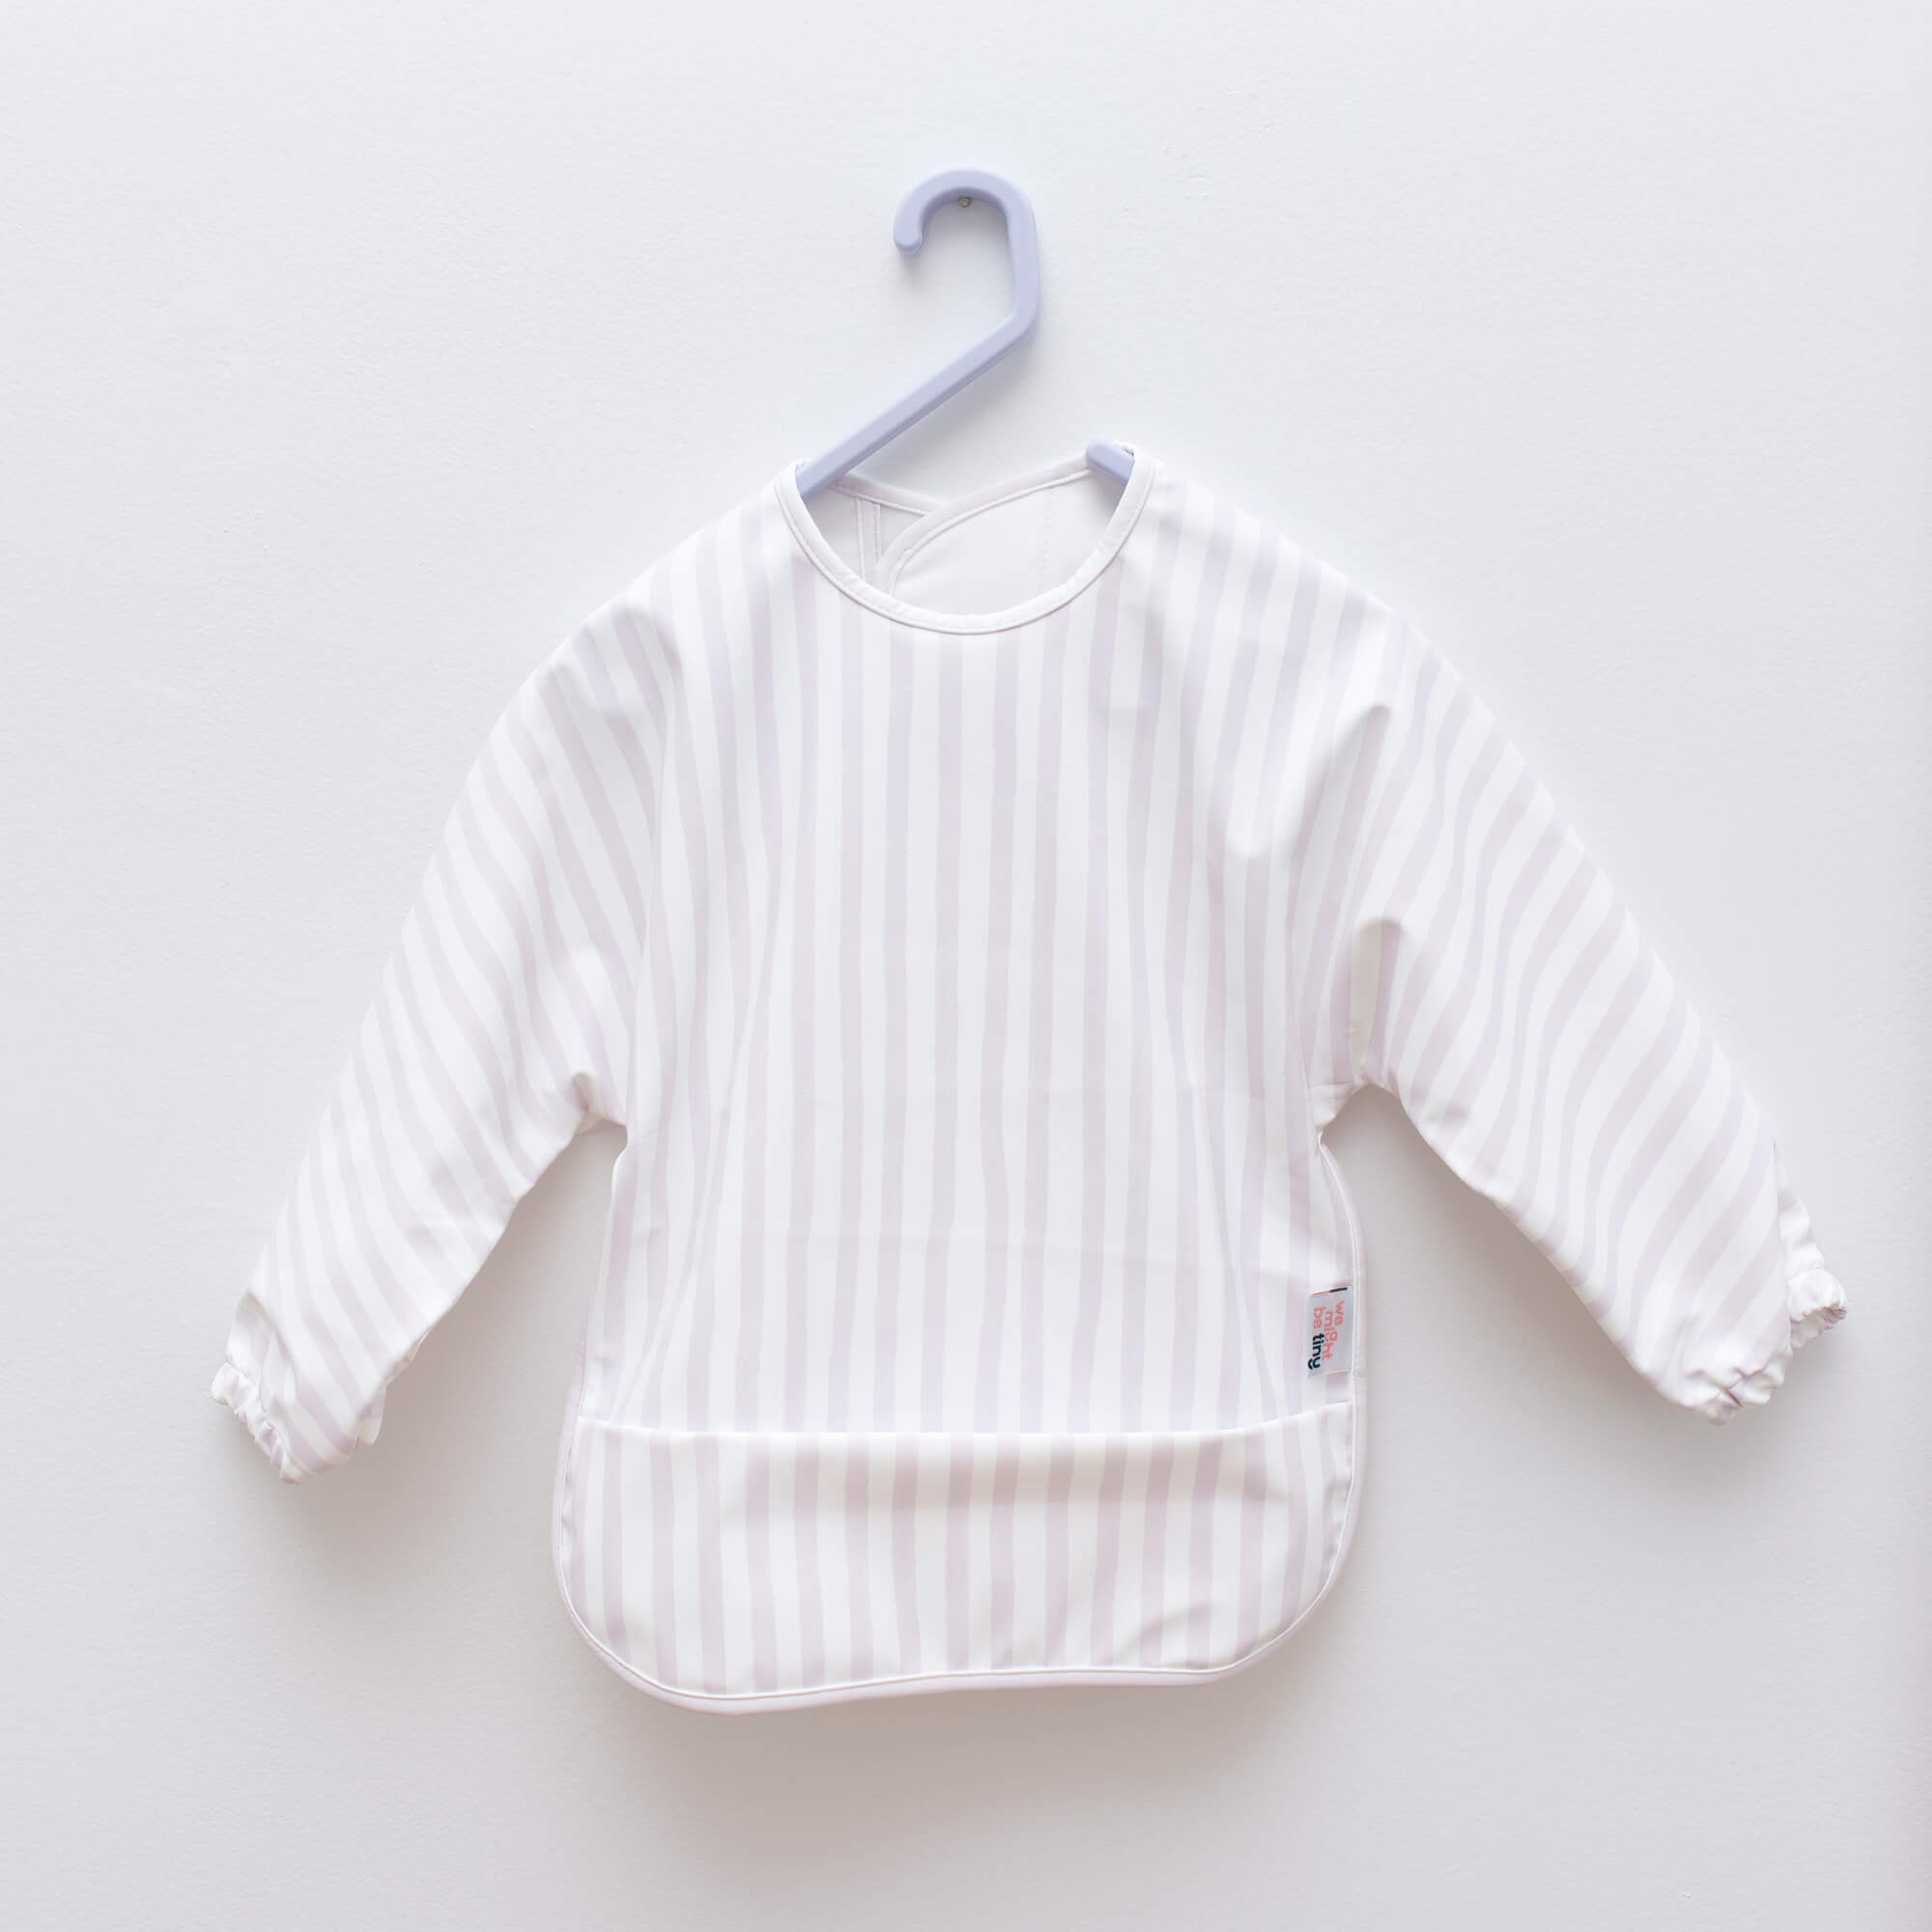 Messie Smock Bib – Lilac Stripe (Baby & Toddler)